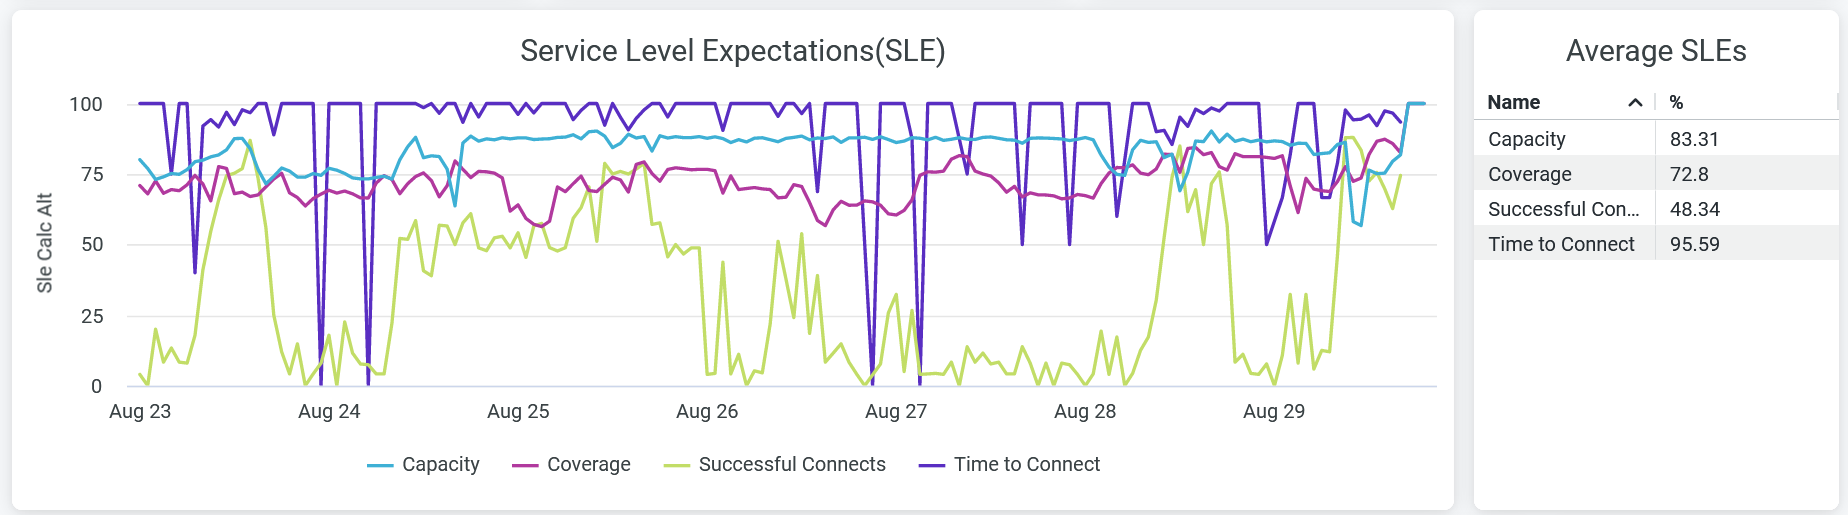 Service Level Expectations (SLE)